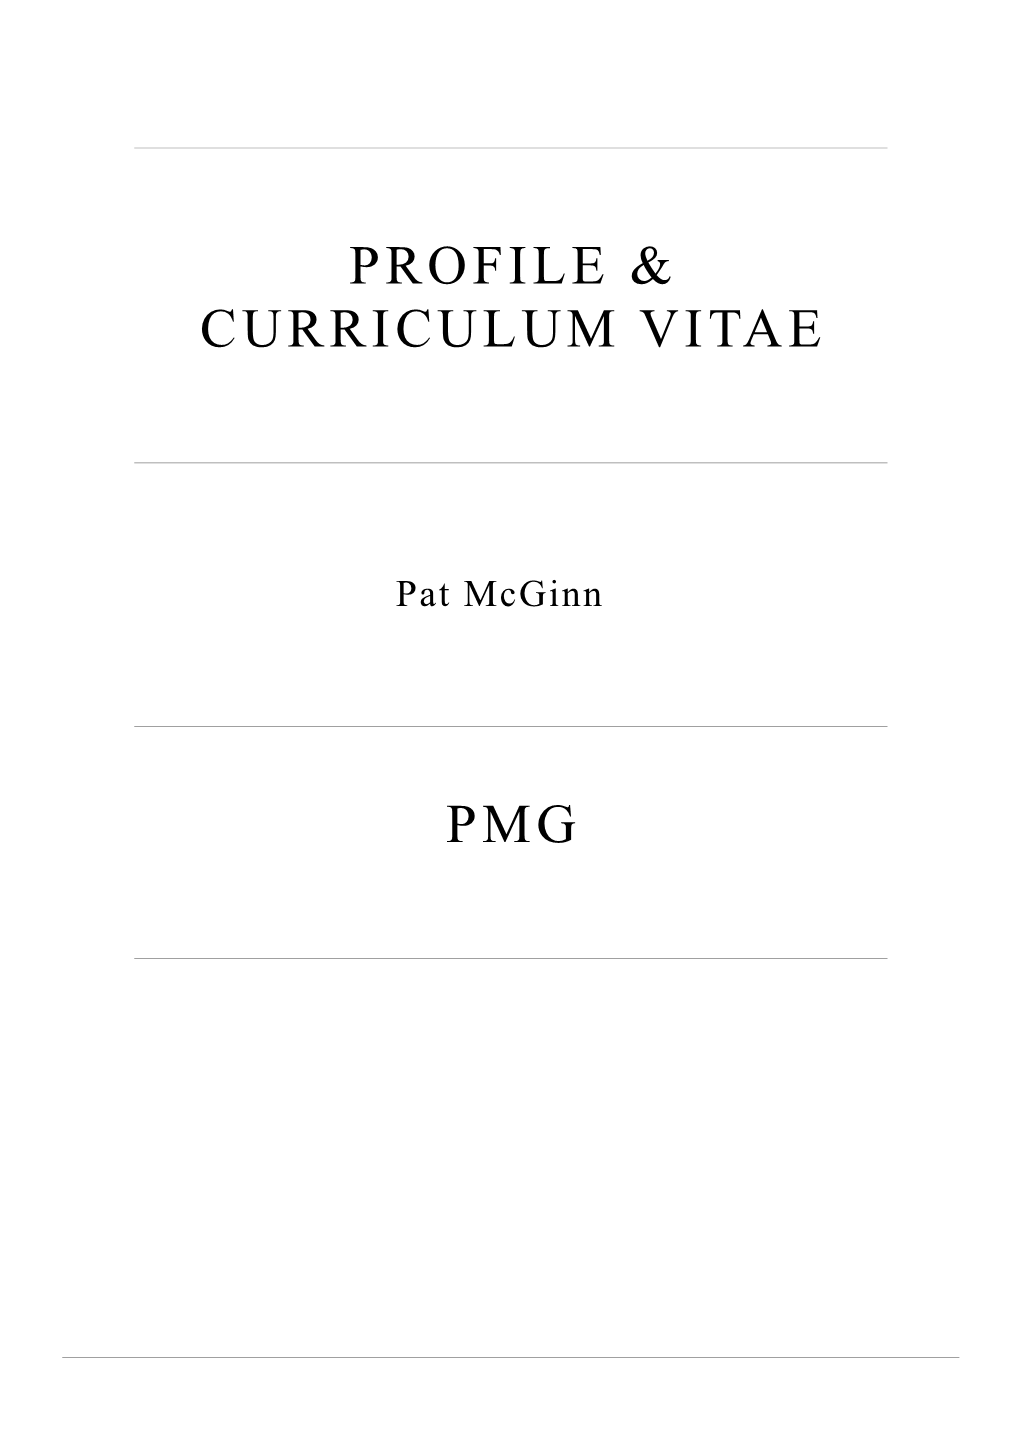 Profile & Curriculum Vitae